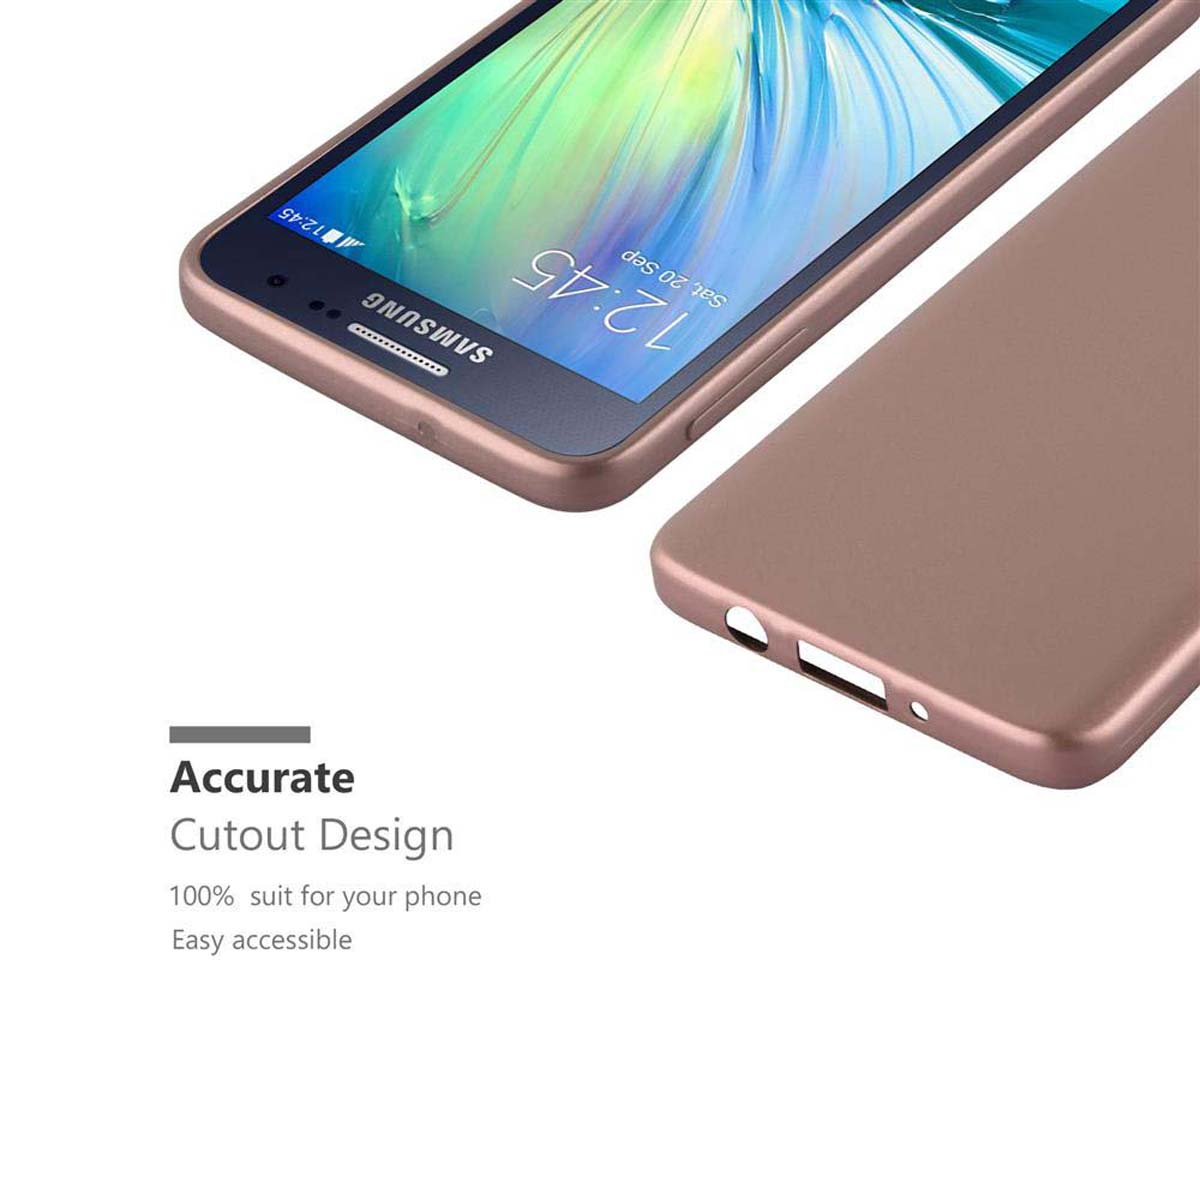 CADORABO TPU 2015, Hülle, GOLD Metallic Galaxy METALLIC Matt A3 ROSÉ Backcover, Samsung